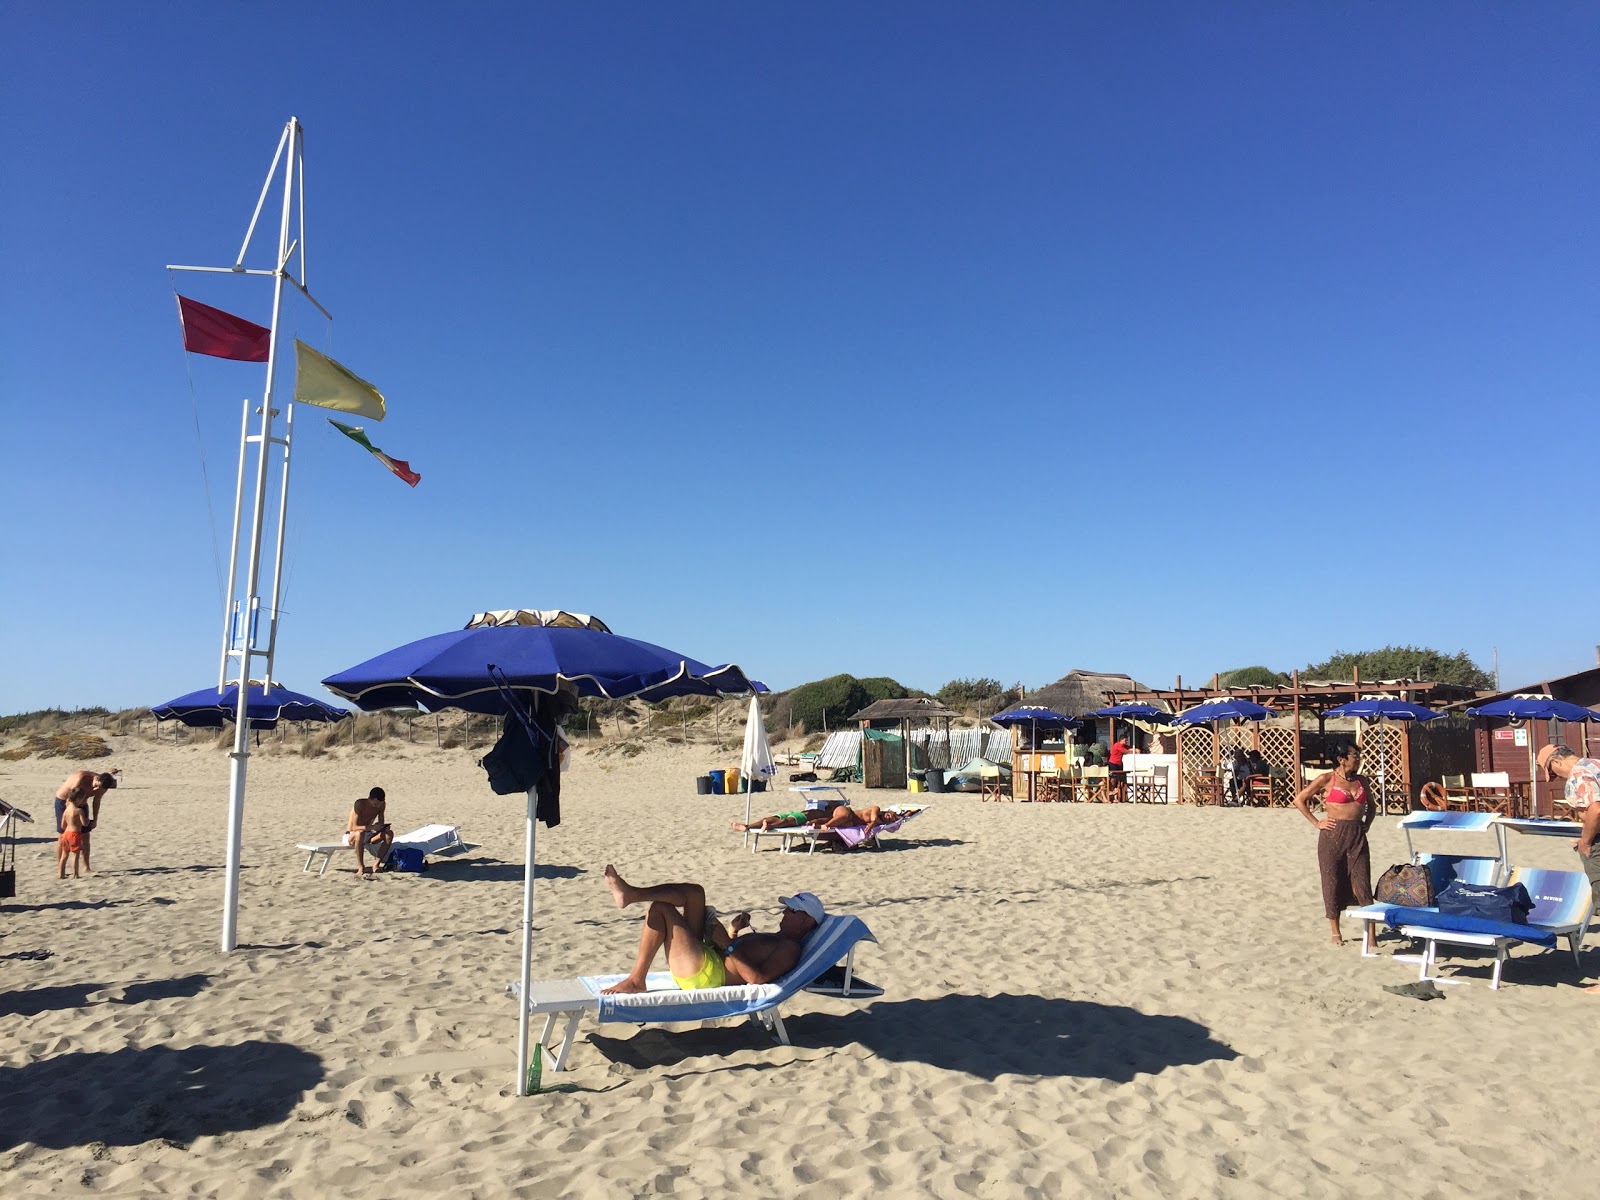 Photo de Zingarini beach - endroit populaire parmi les connaisseurs de la détente